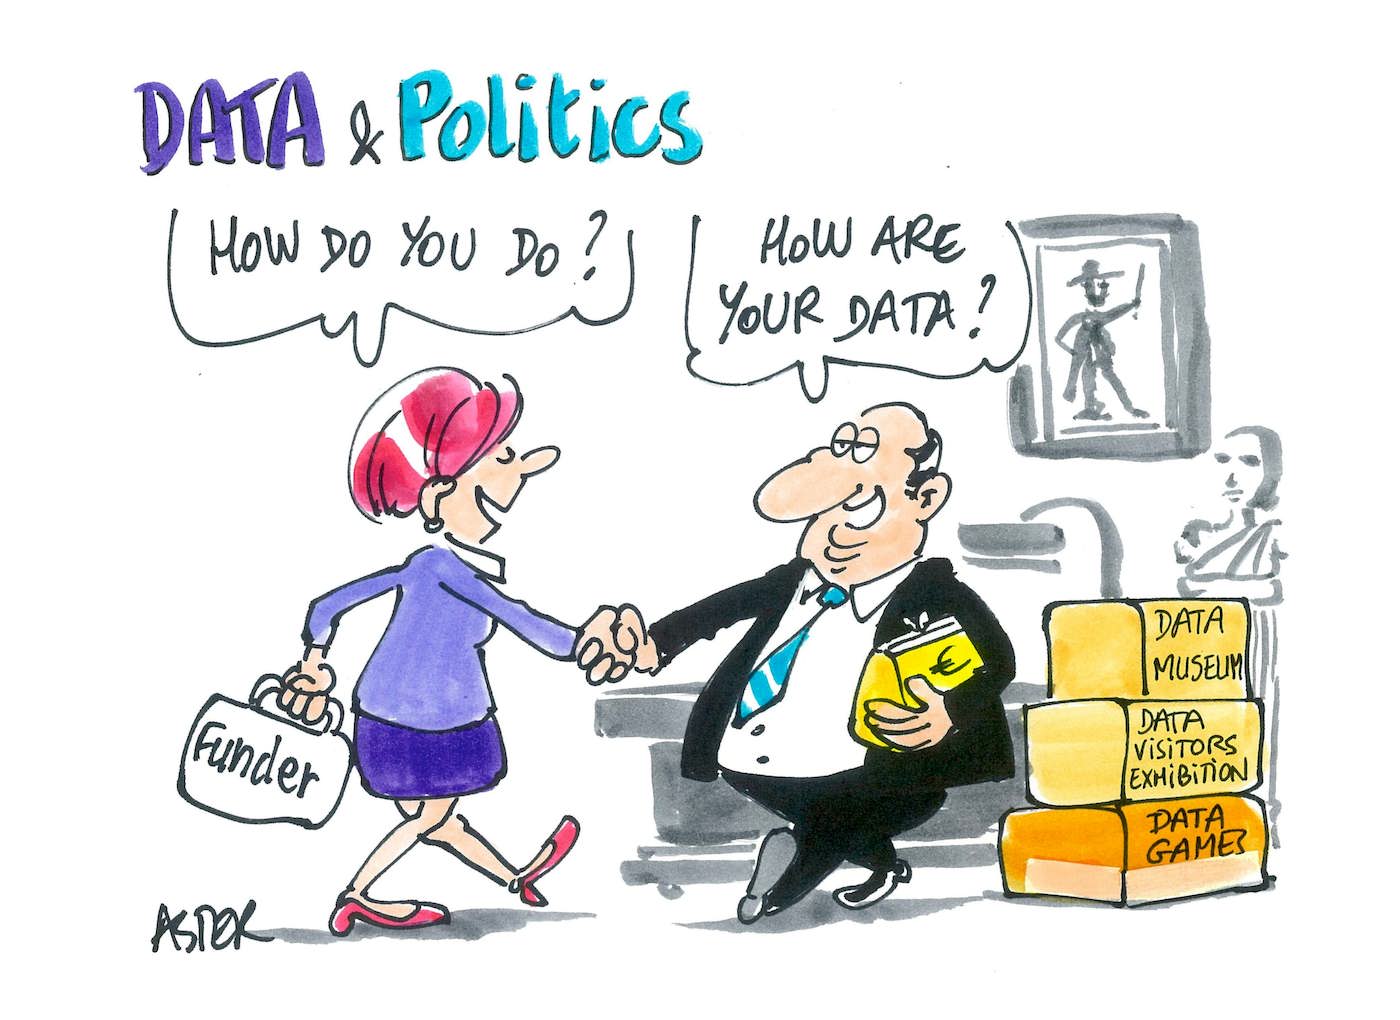 Data & politics